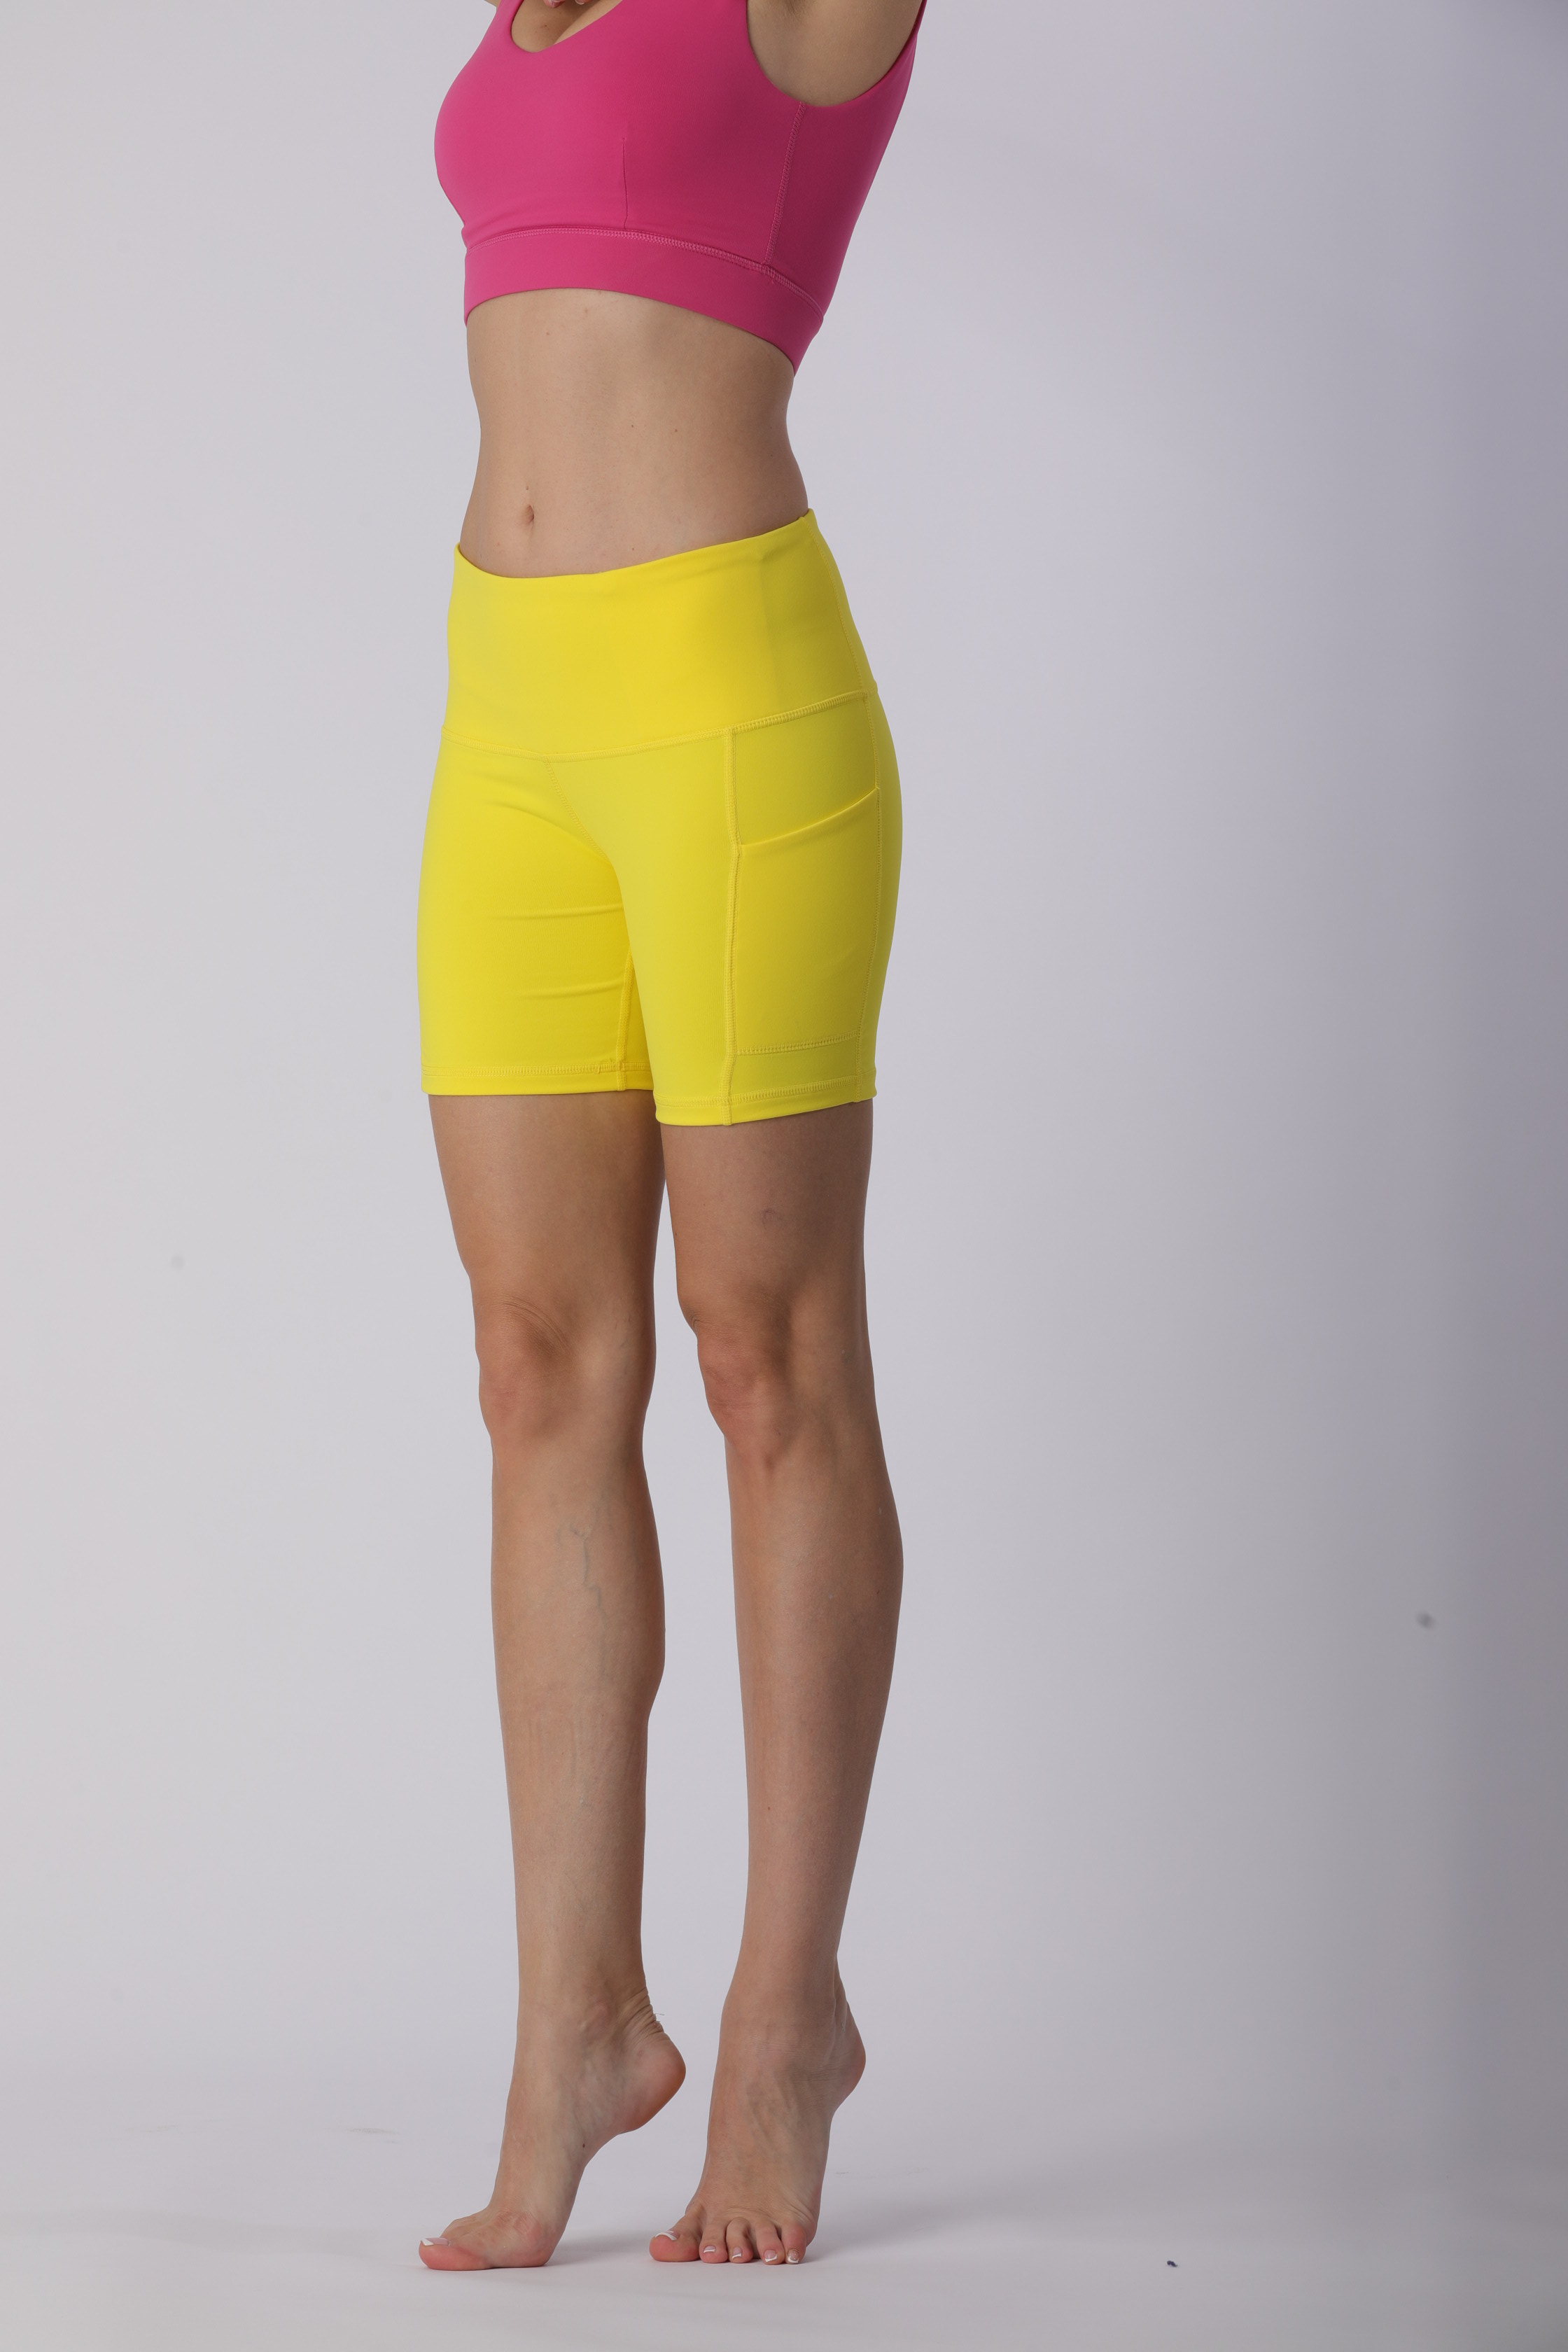 素色紧身裤性感模特，瑜伽裤勾勒出迷人身材_瑜珈